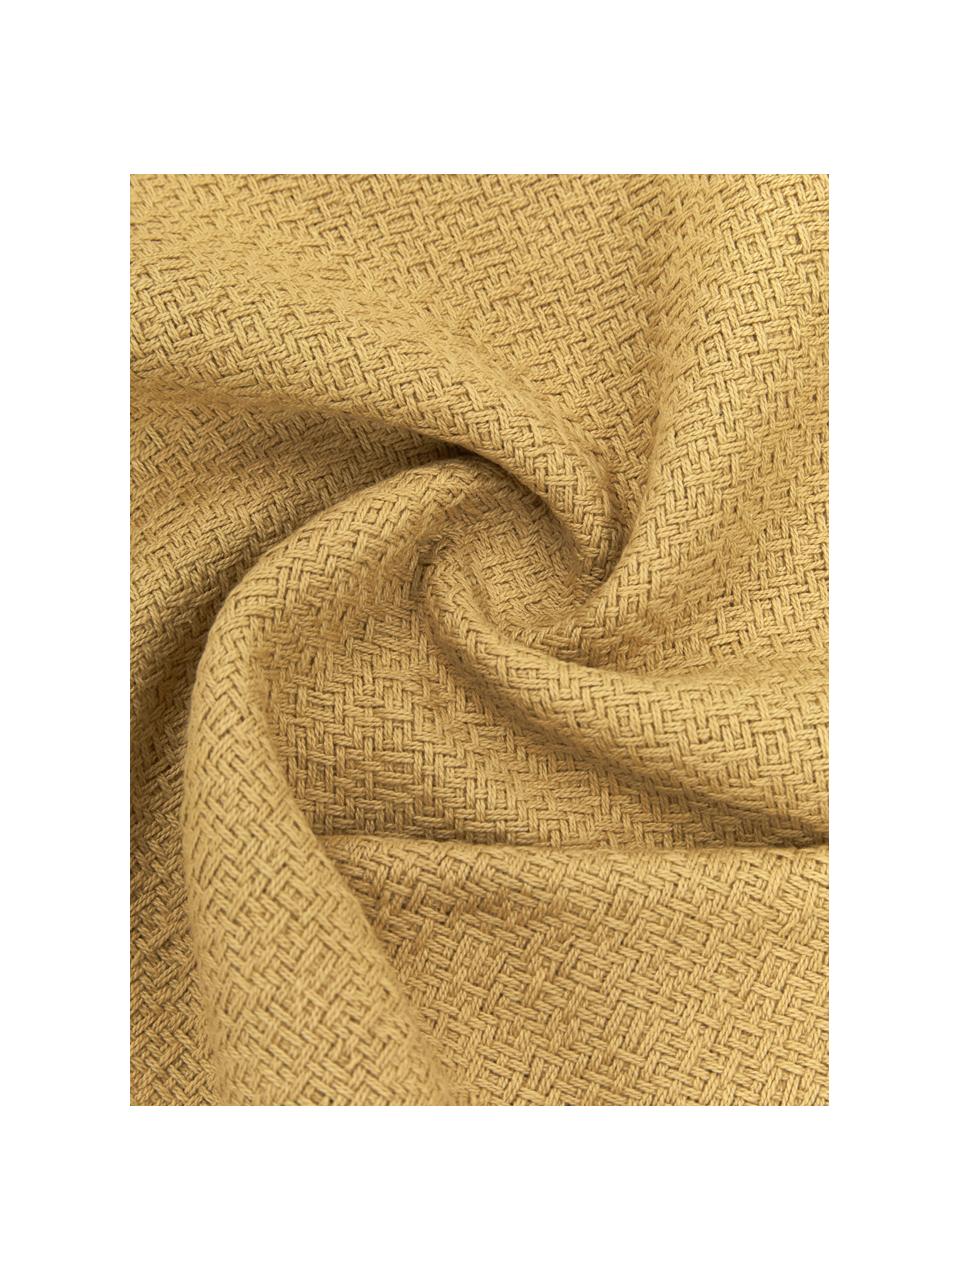 Oboustranný povlak na polštář s třásněmi Loran, 100 % bavlna, Hořčičná žlutá, krémově bílá, Š 30 cm, D 50 cm